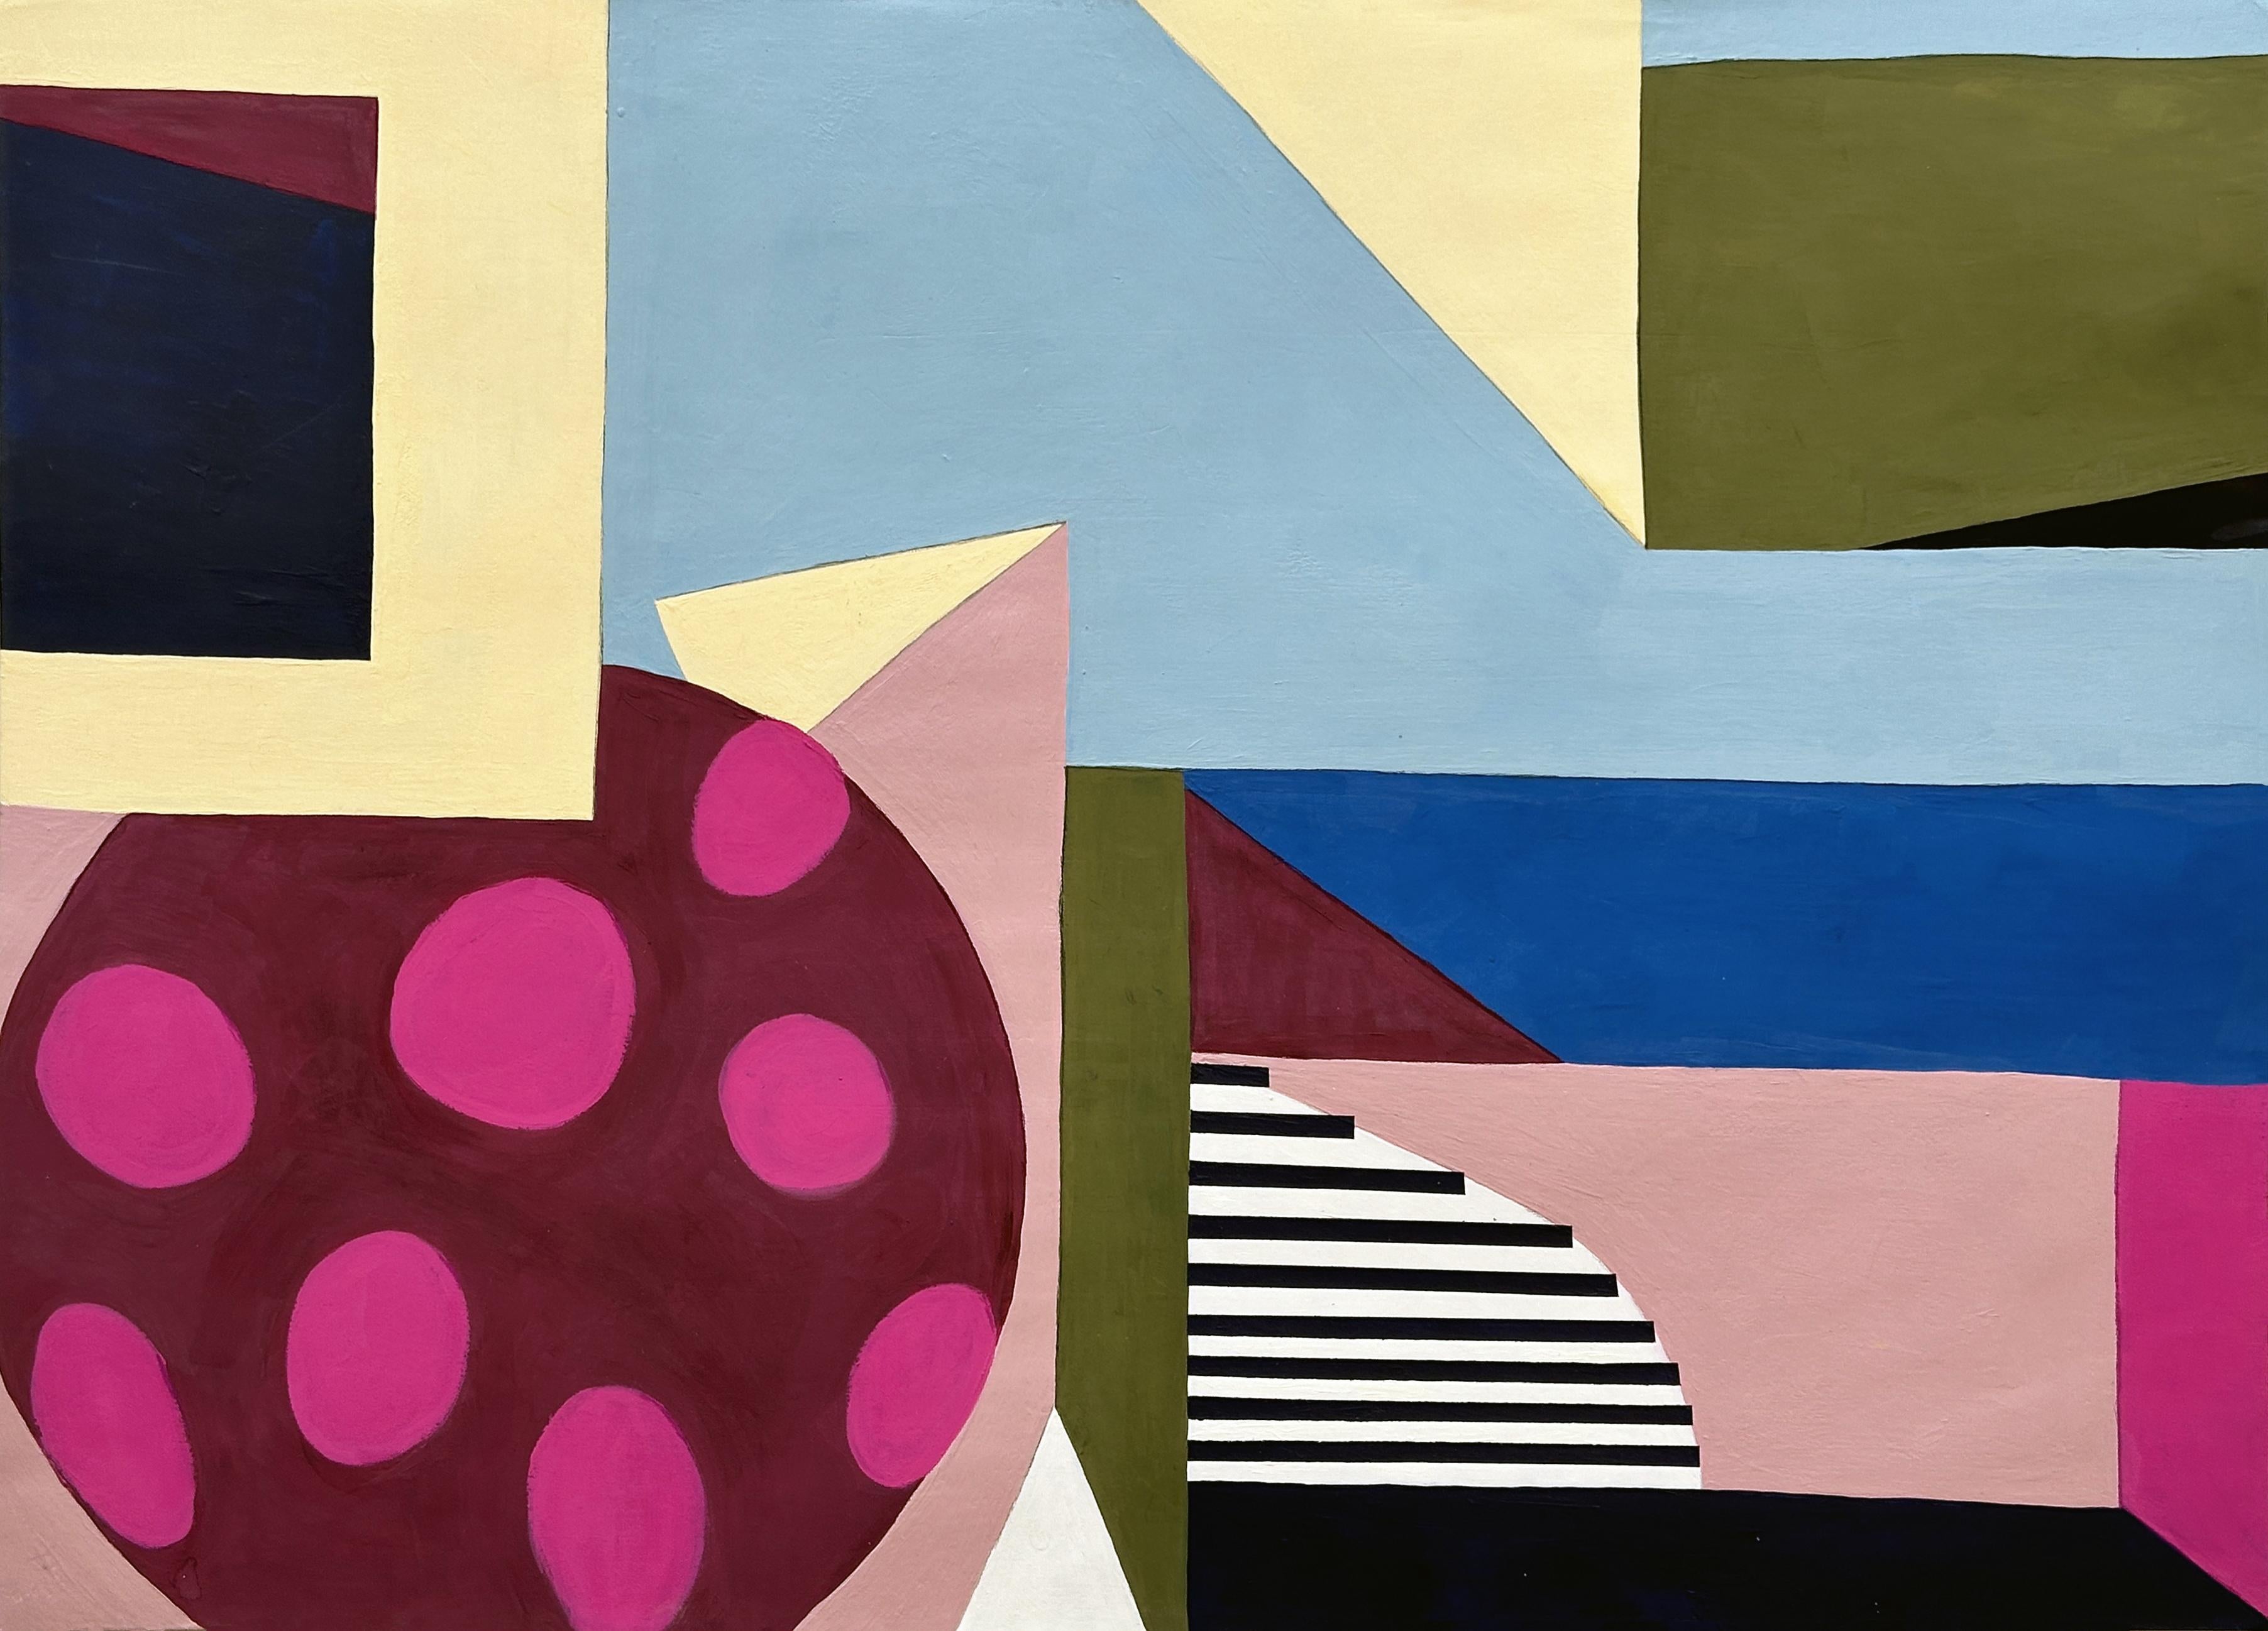 Abstract Painting Amanda Andersen - "Vertical Plane III" peinture abstraite sur papier géométrique, formes empilées brillantes